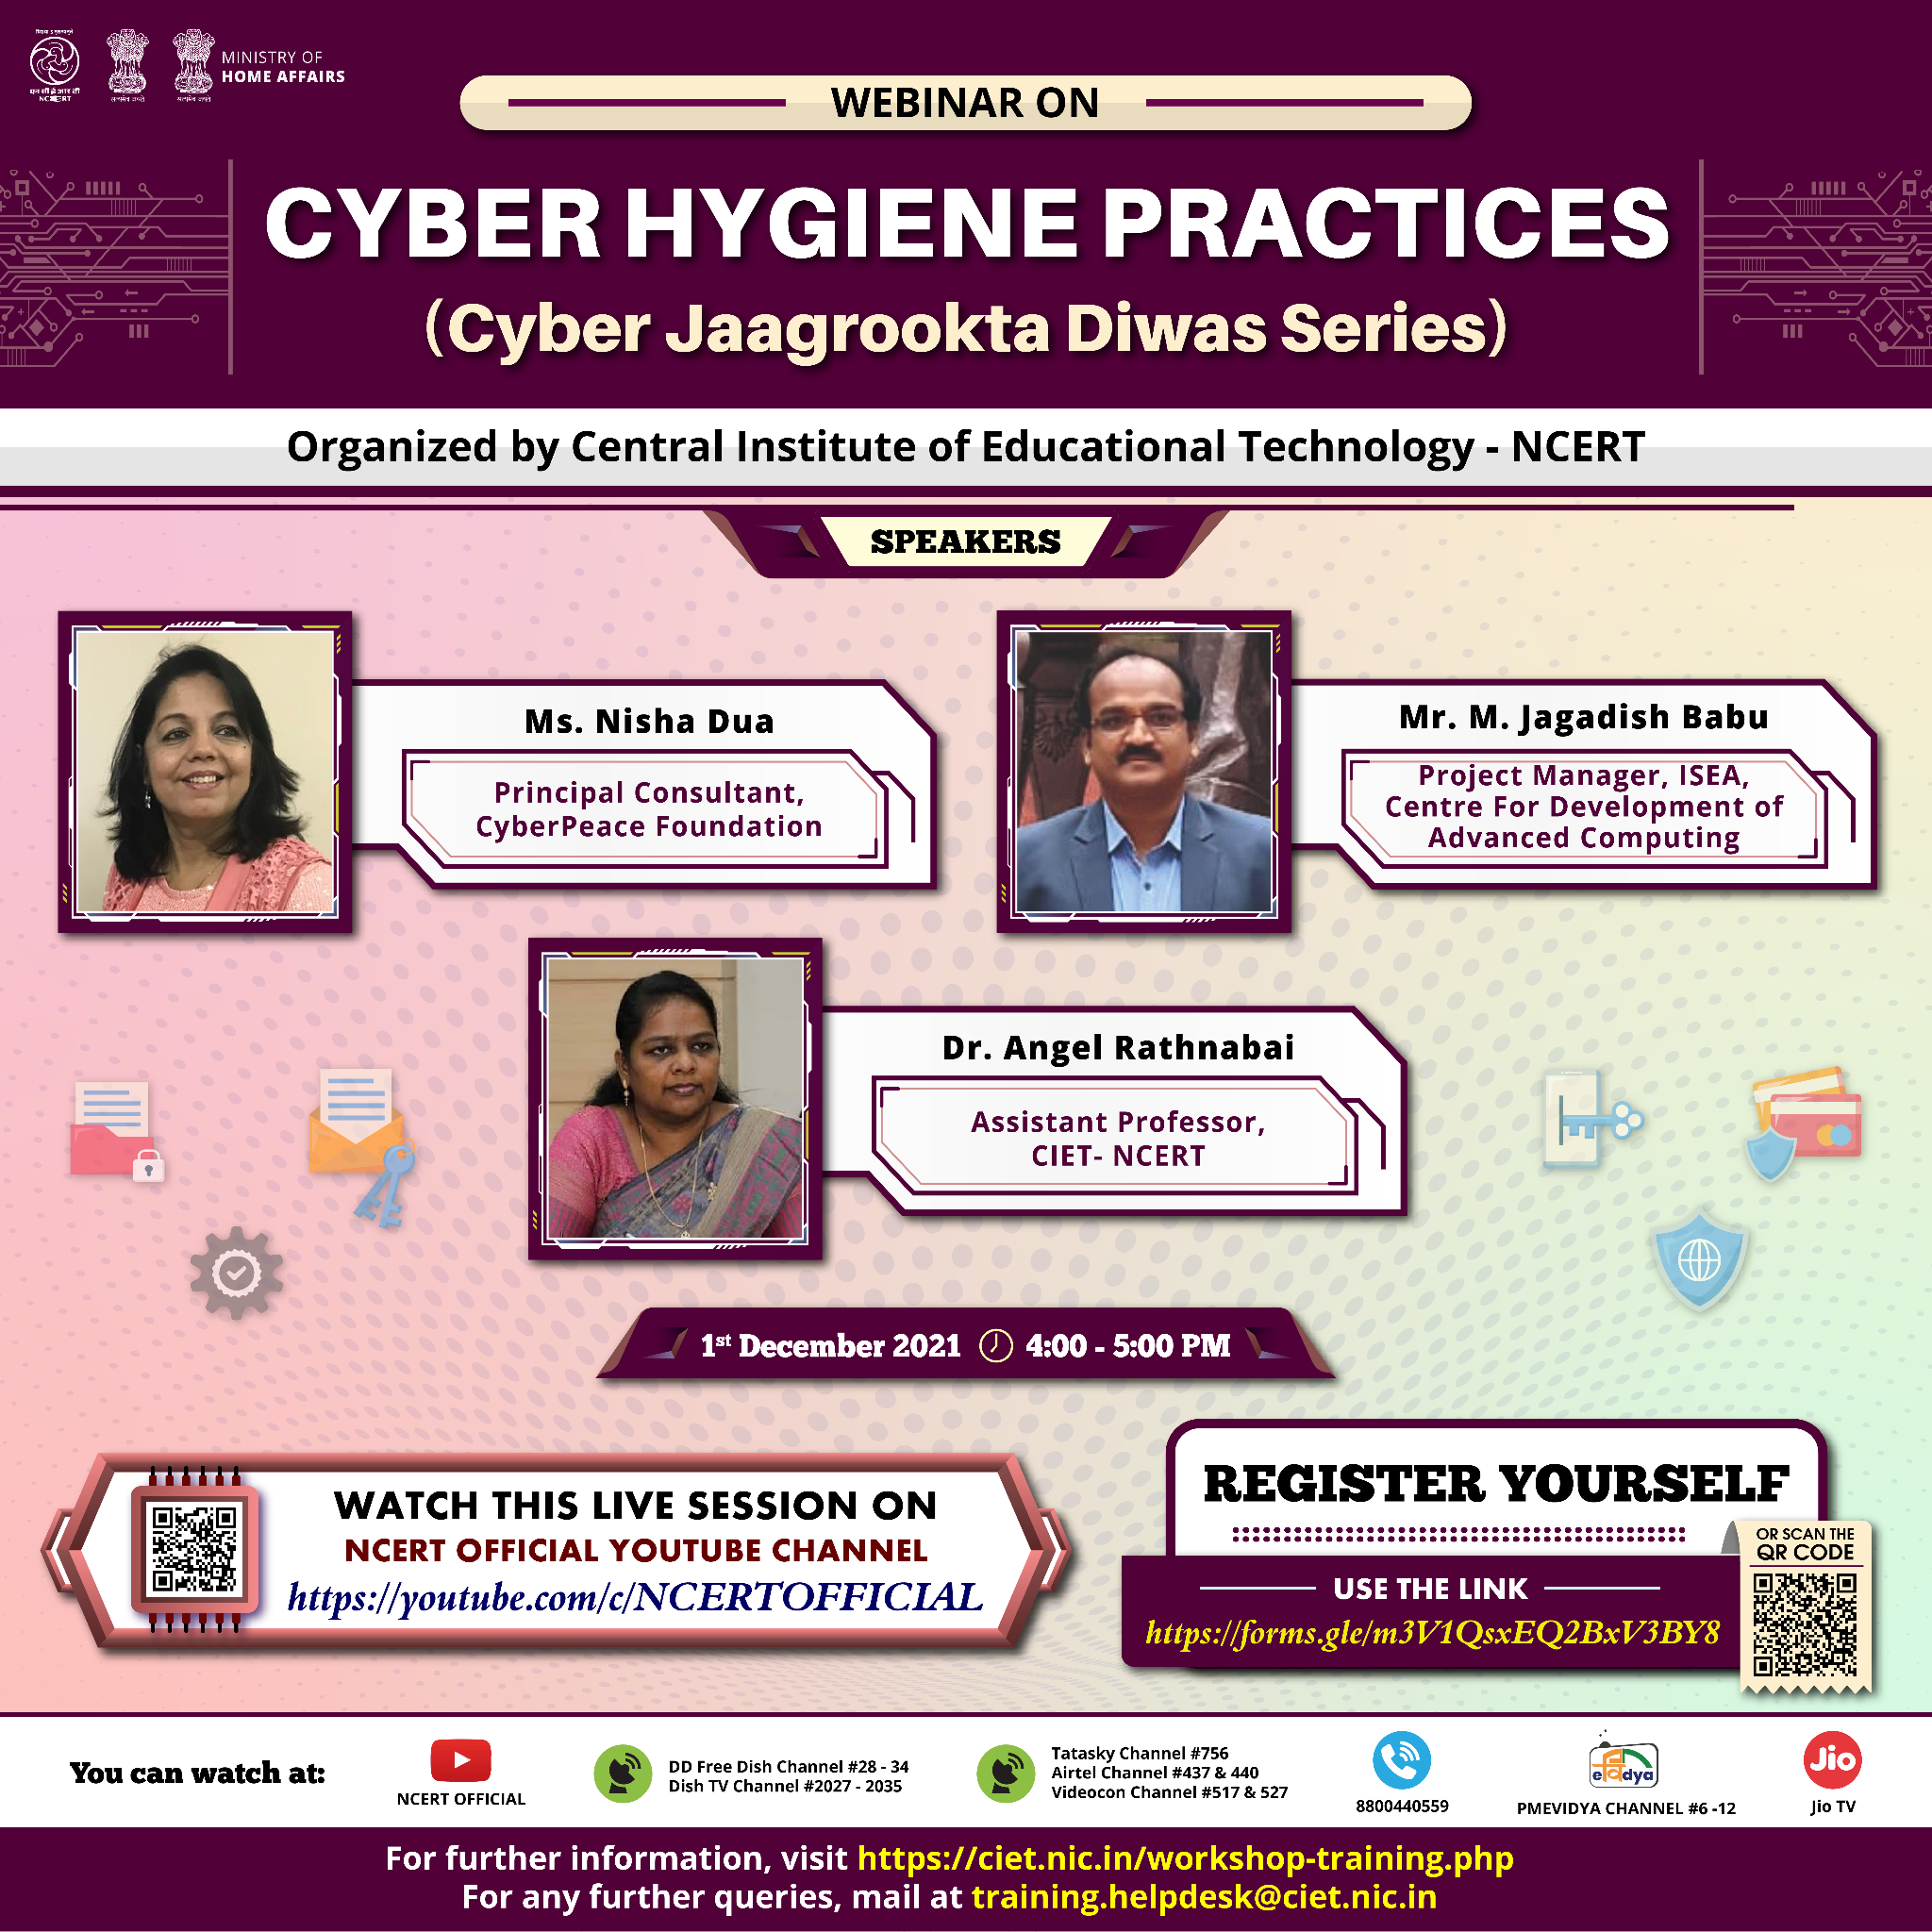 Webinar on ‘Cyber Hygiene Practices’ (Cyber Jaagrookta Diwas Series) Image